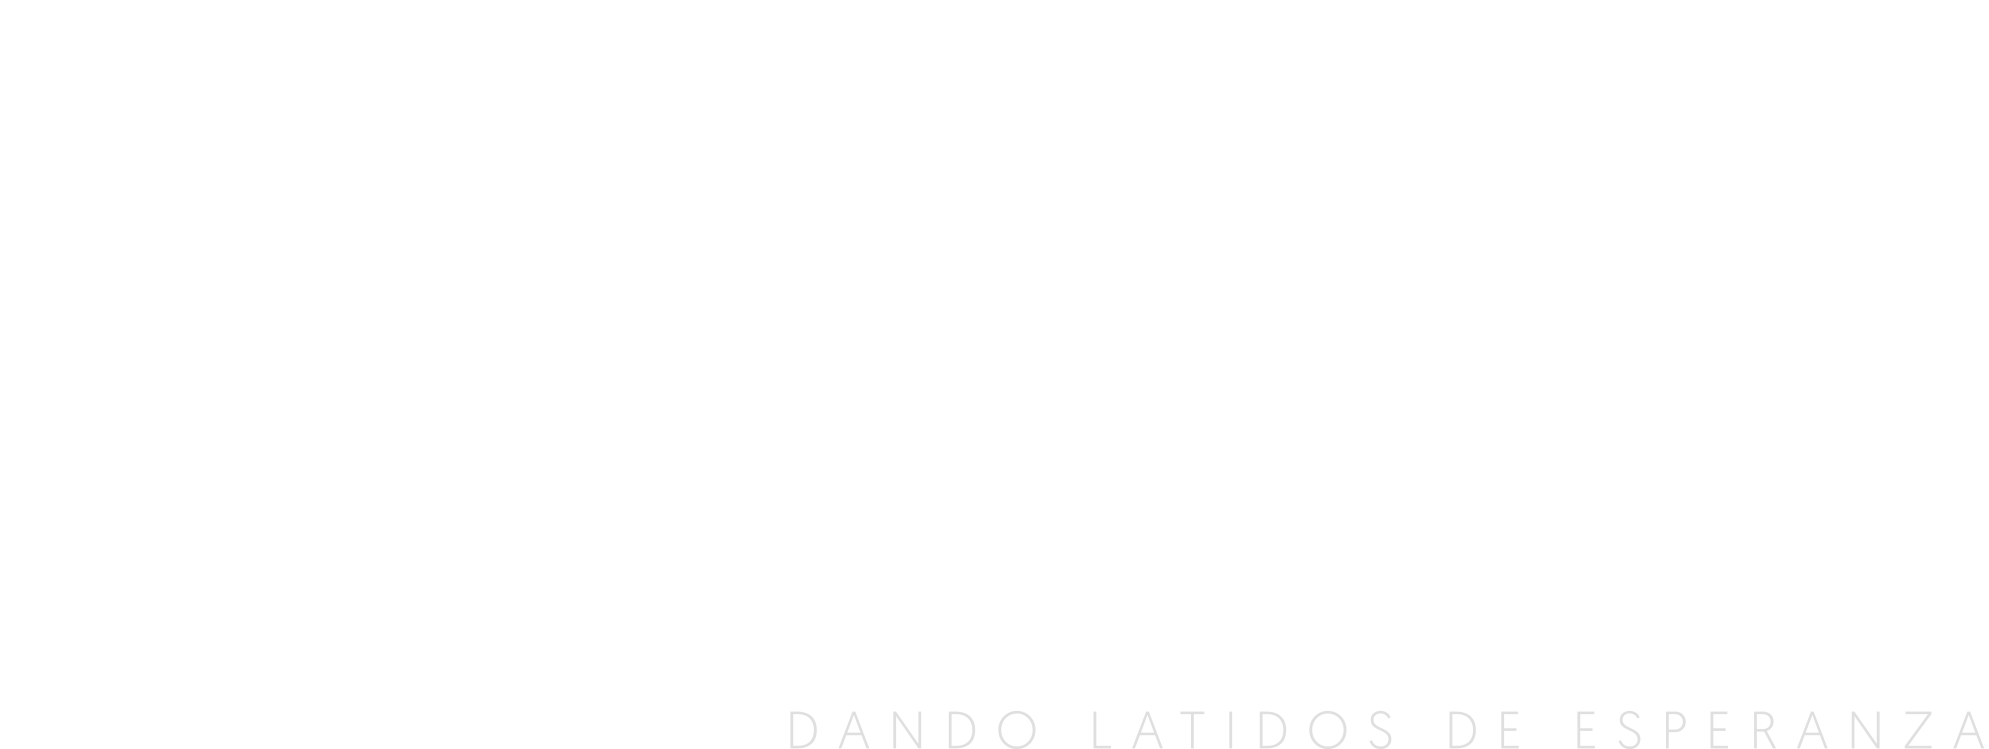 https://fetalmedyc.com/wp-content/uploads/2023/01/logo_white.png